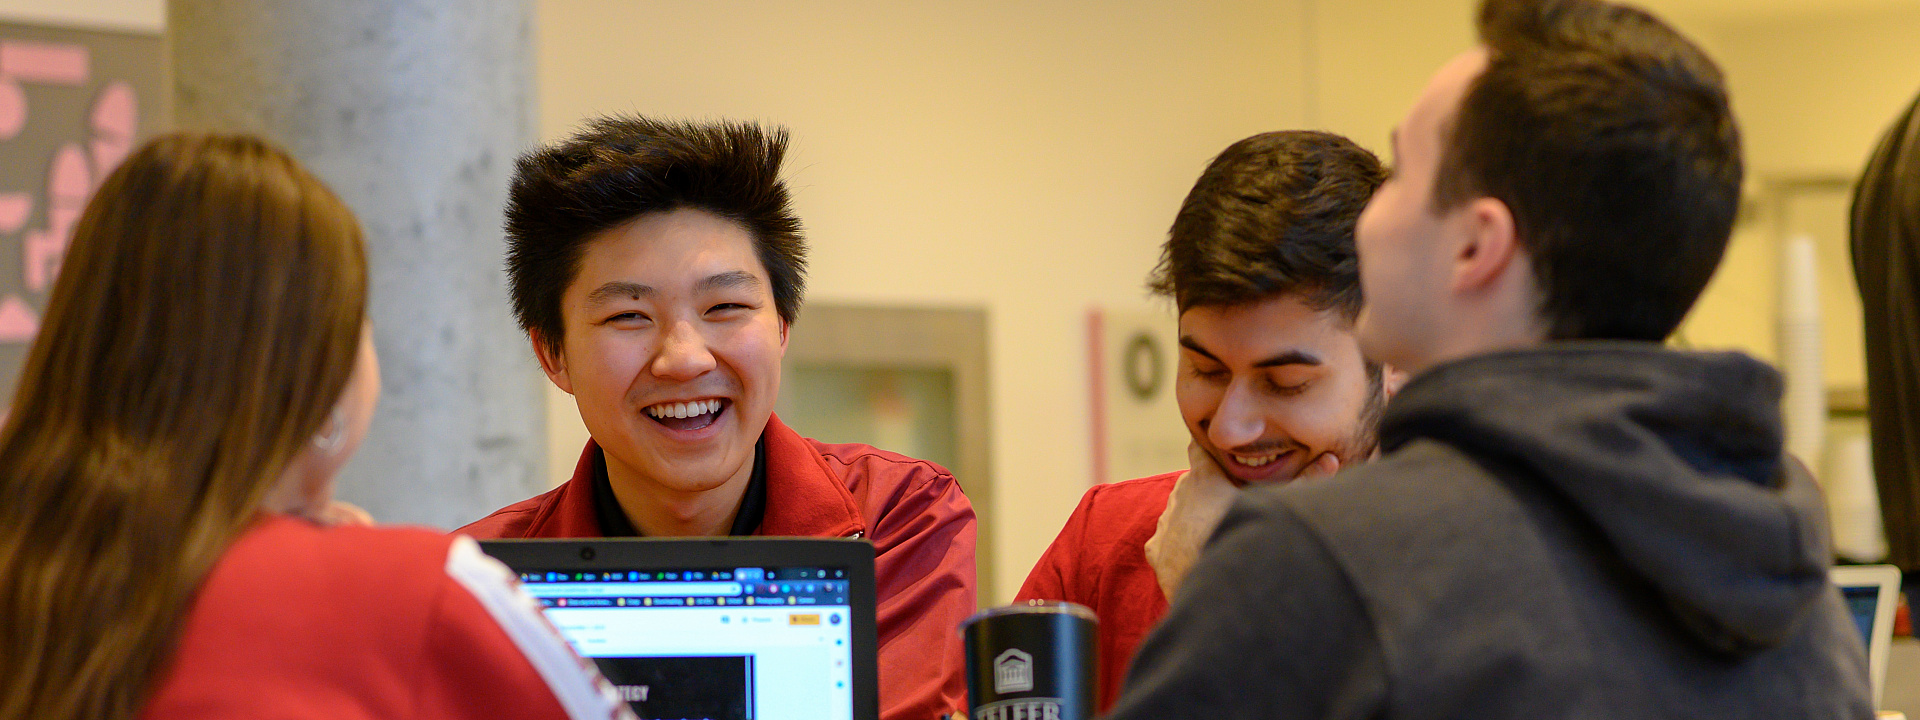 Groupe d'étudiants de Telfer qui sourient et étudient ensemble au pavillon Desmarais